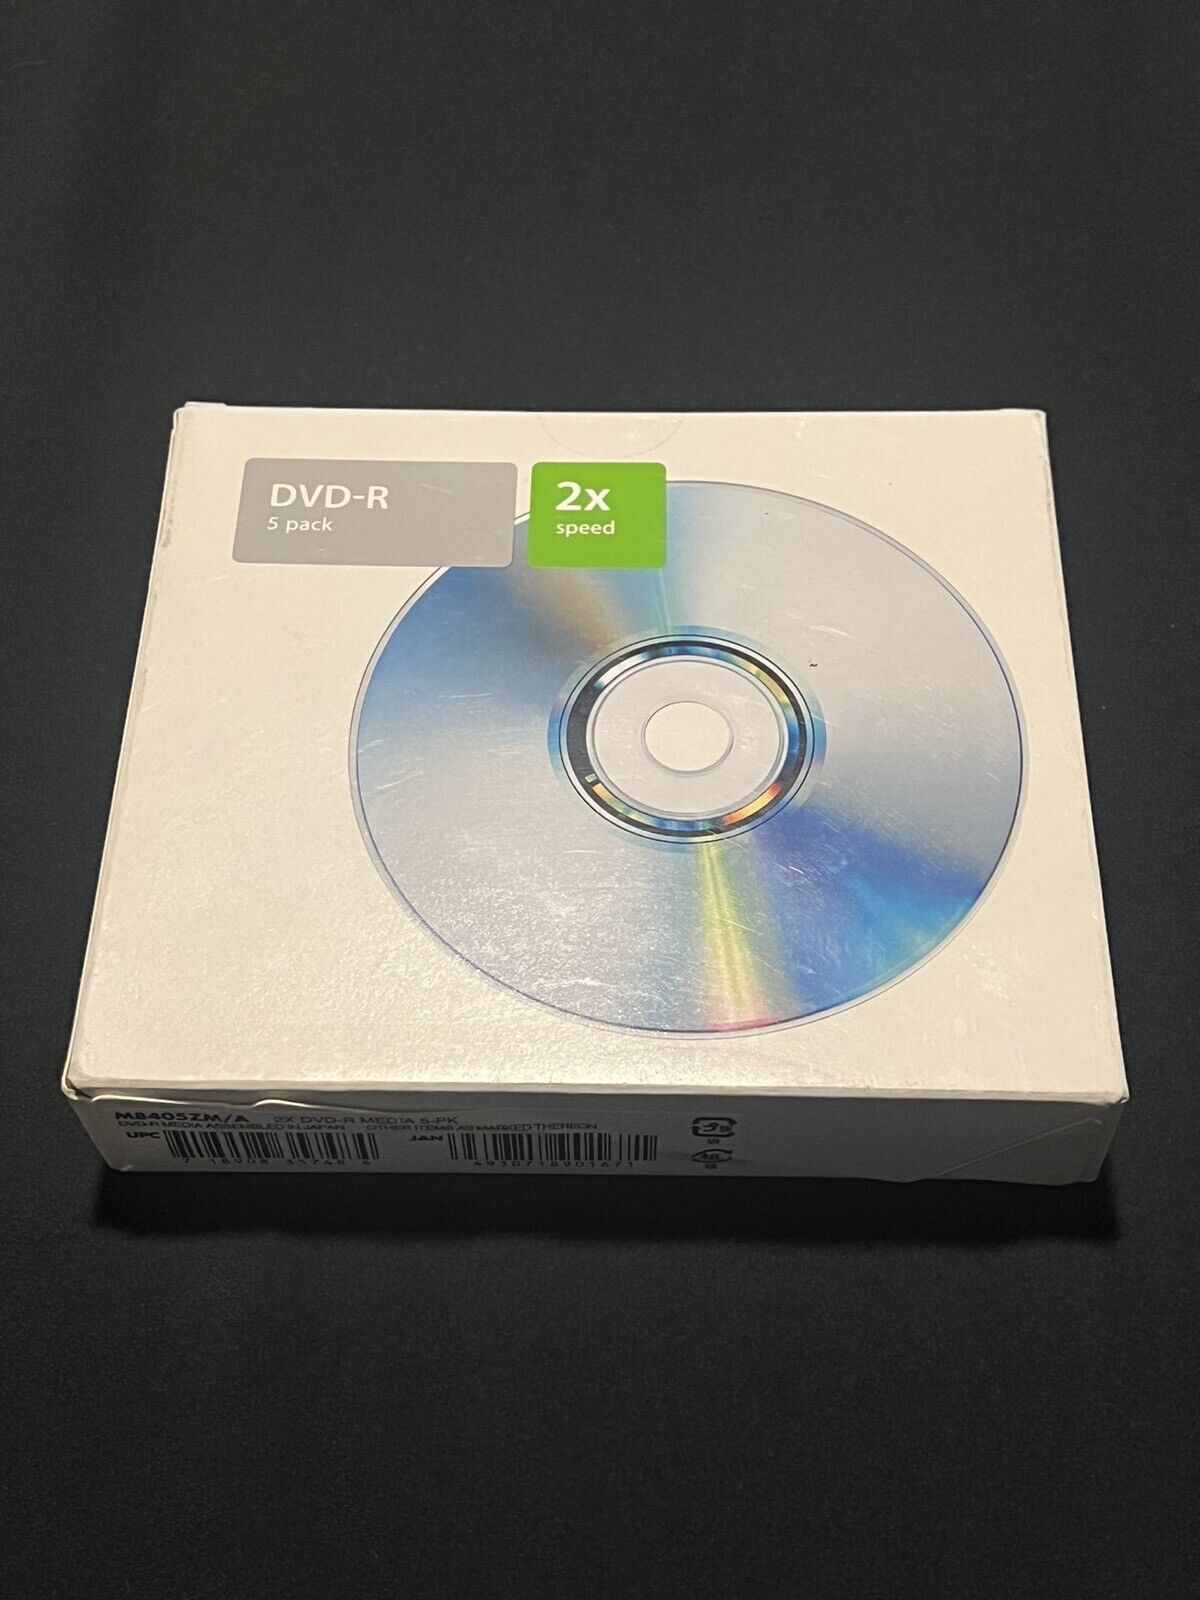 Apple DVD-R 5 Pack 2x Speed 4.7 GB Media Discs Sealed Original Rare